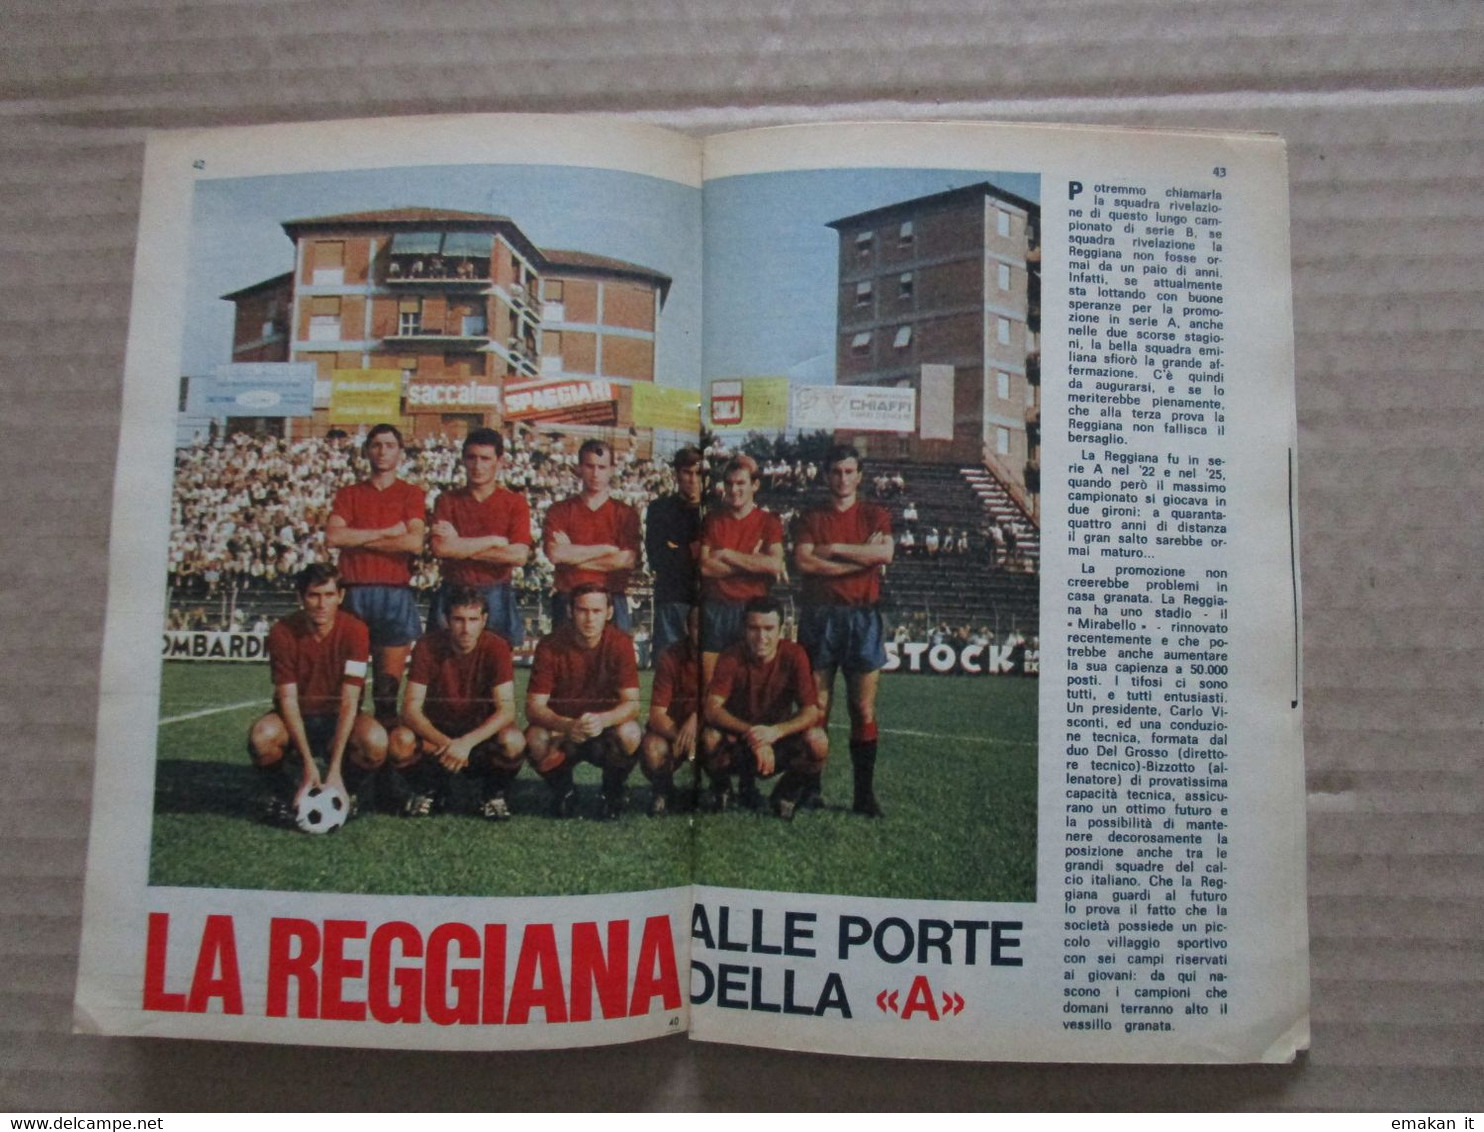 # IL MONELLO N 21 / 1969 ARTICOLO REGGIANA ALLE PORTE DELLA A - Prime Edizioni